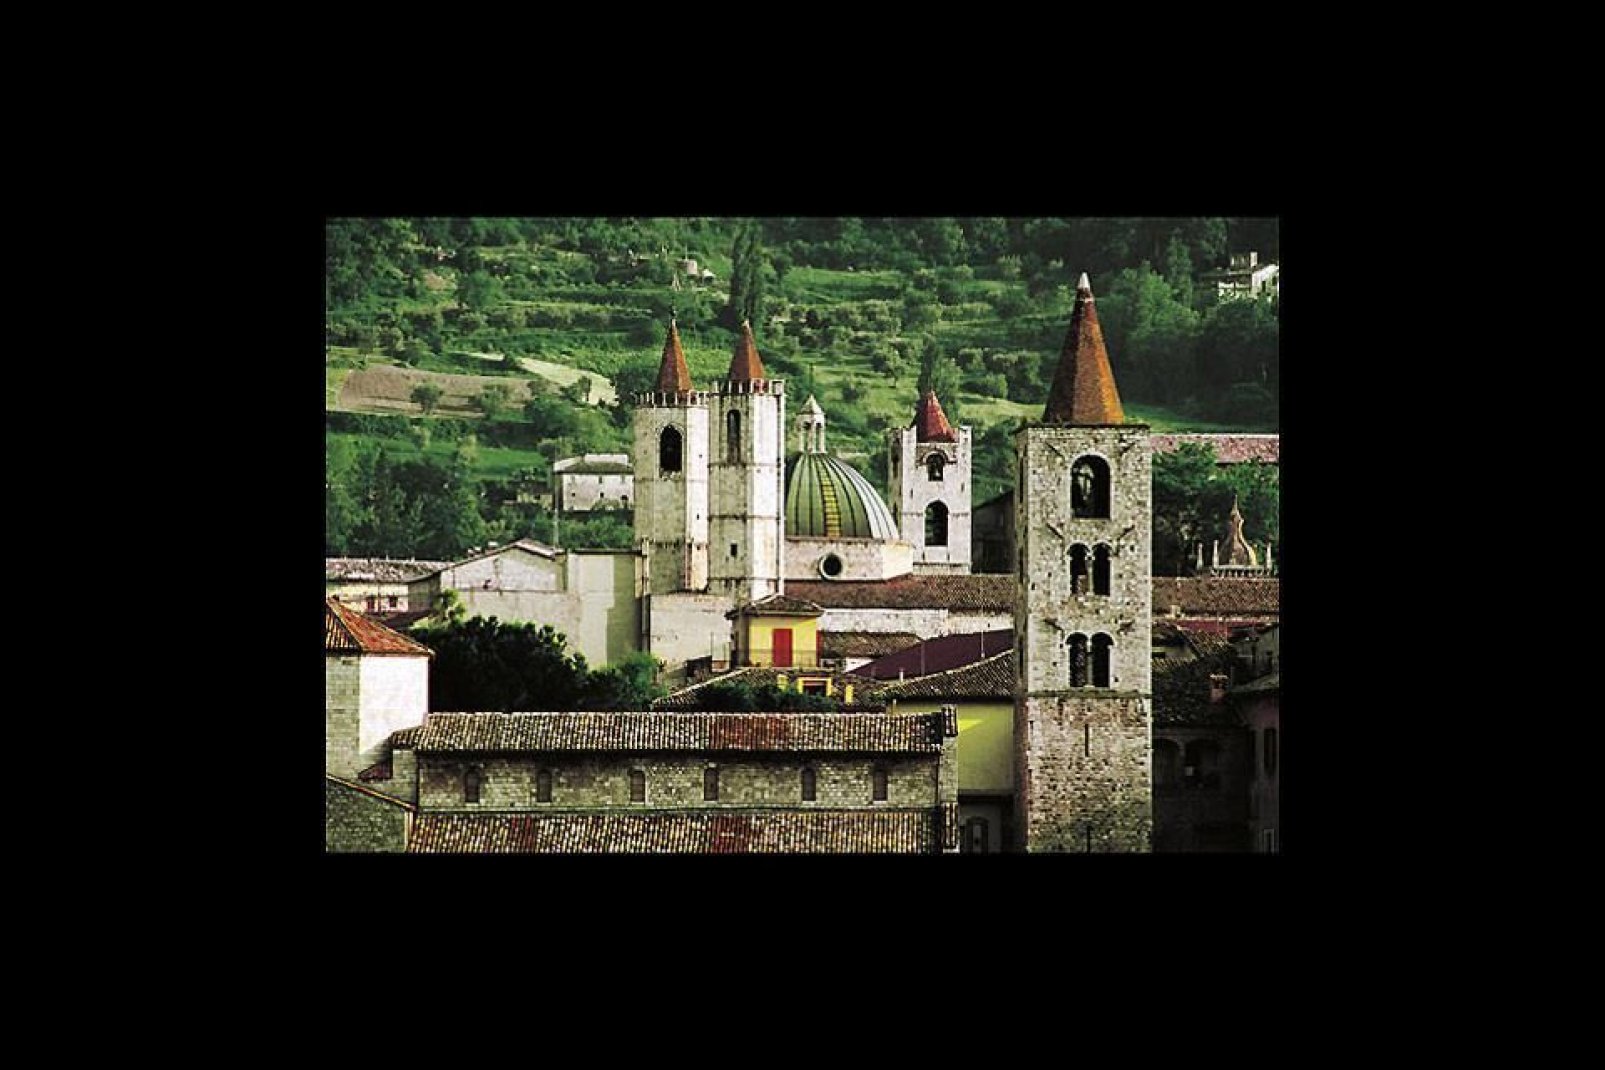 Die Kirche Heilige-Francois ist eines der besten Beispiele der franziskanischen Architektur in Italien und innerhalb der mittelitalienische Region der Marken.